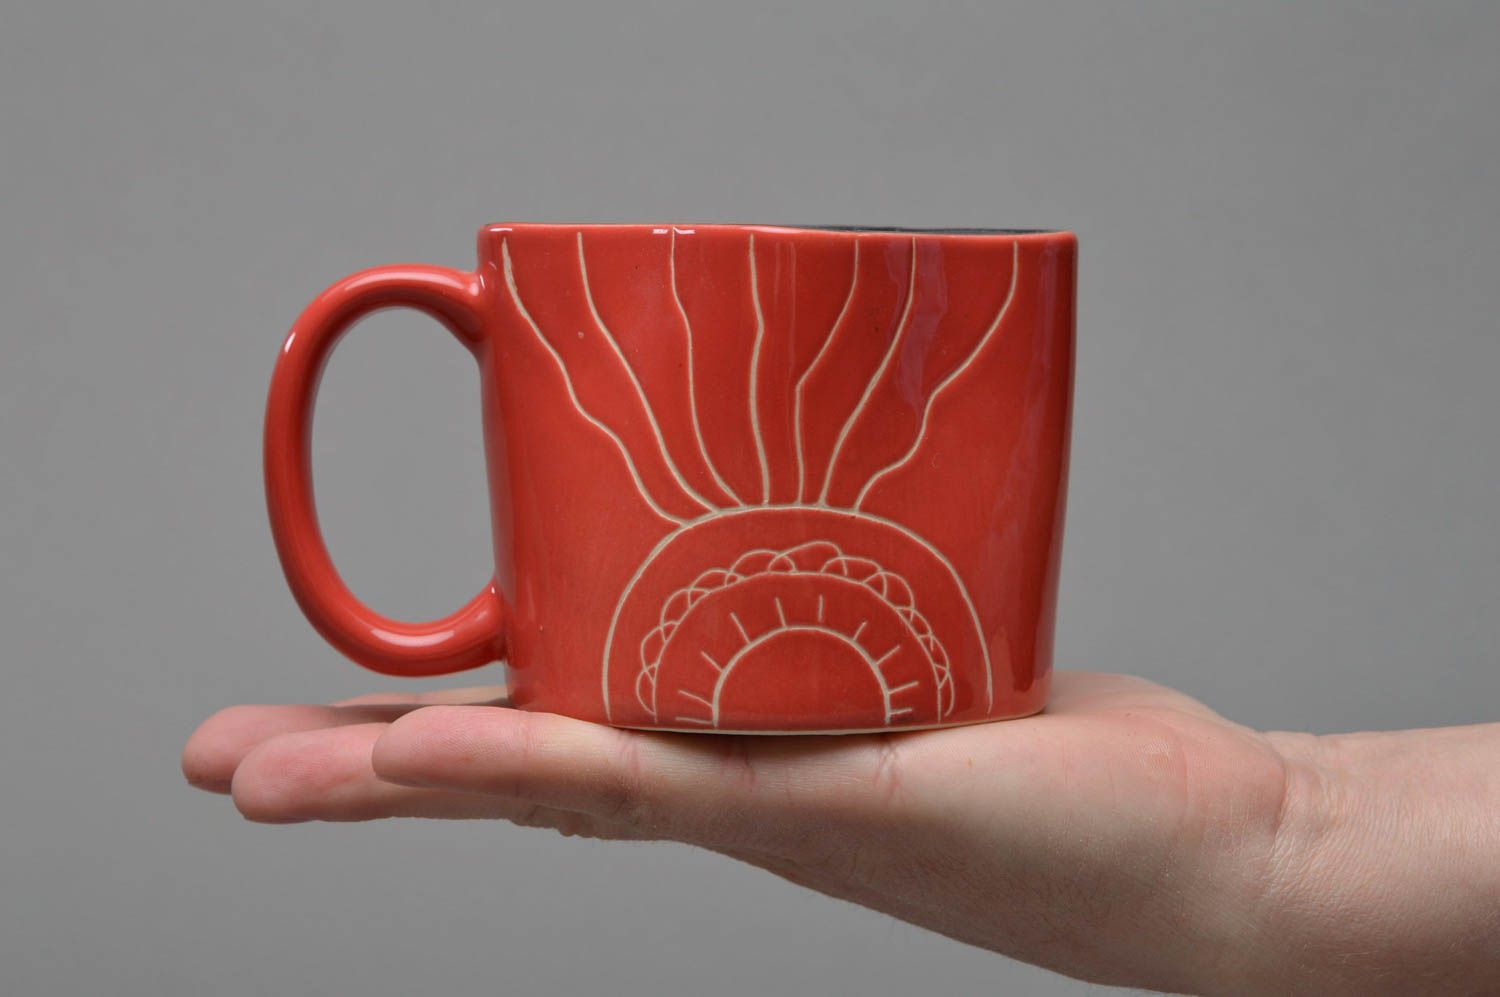 Оригинальная чашка из фарфора с надписью ручной работы для кофе или чая фото 4